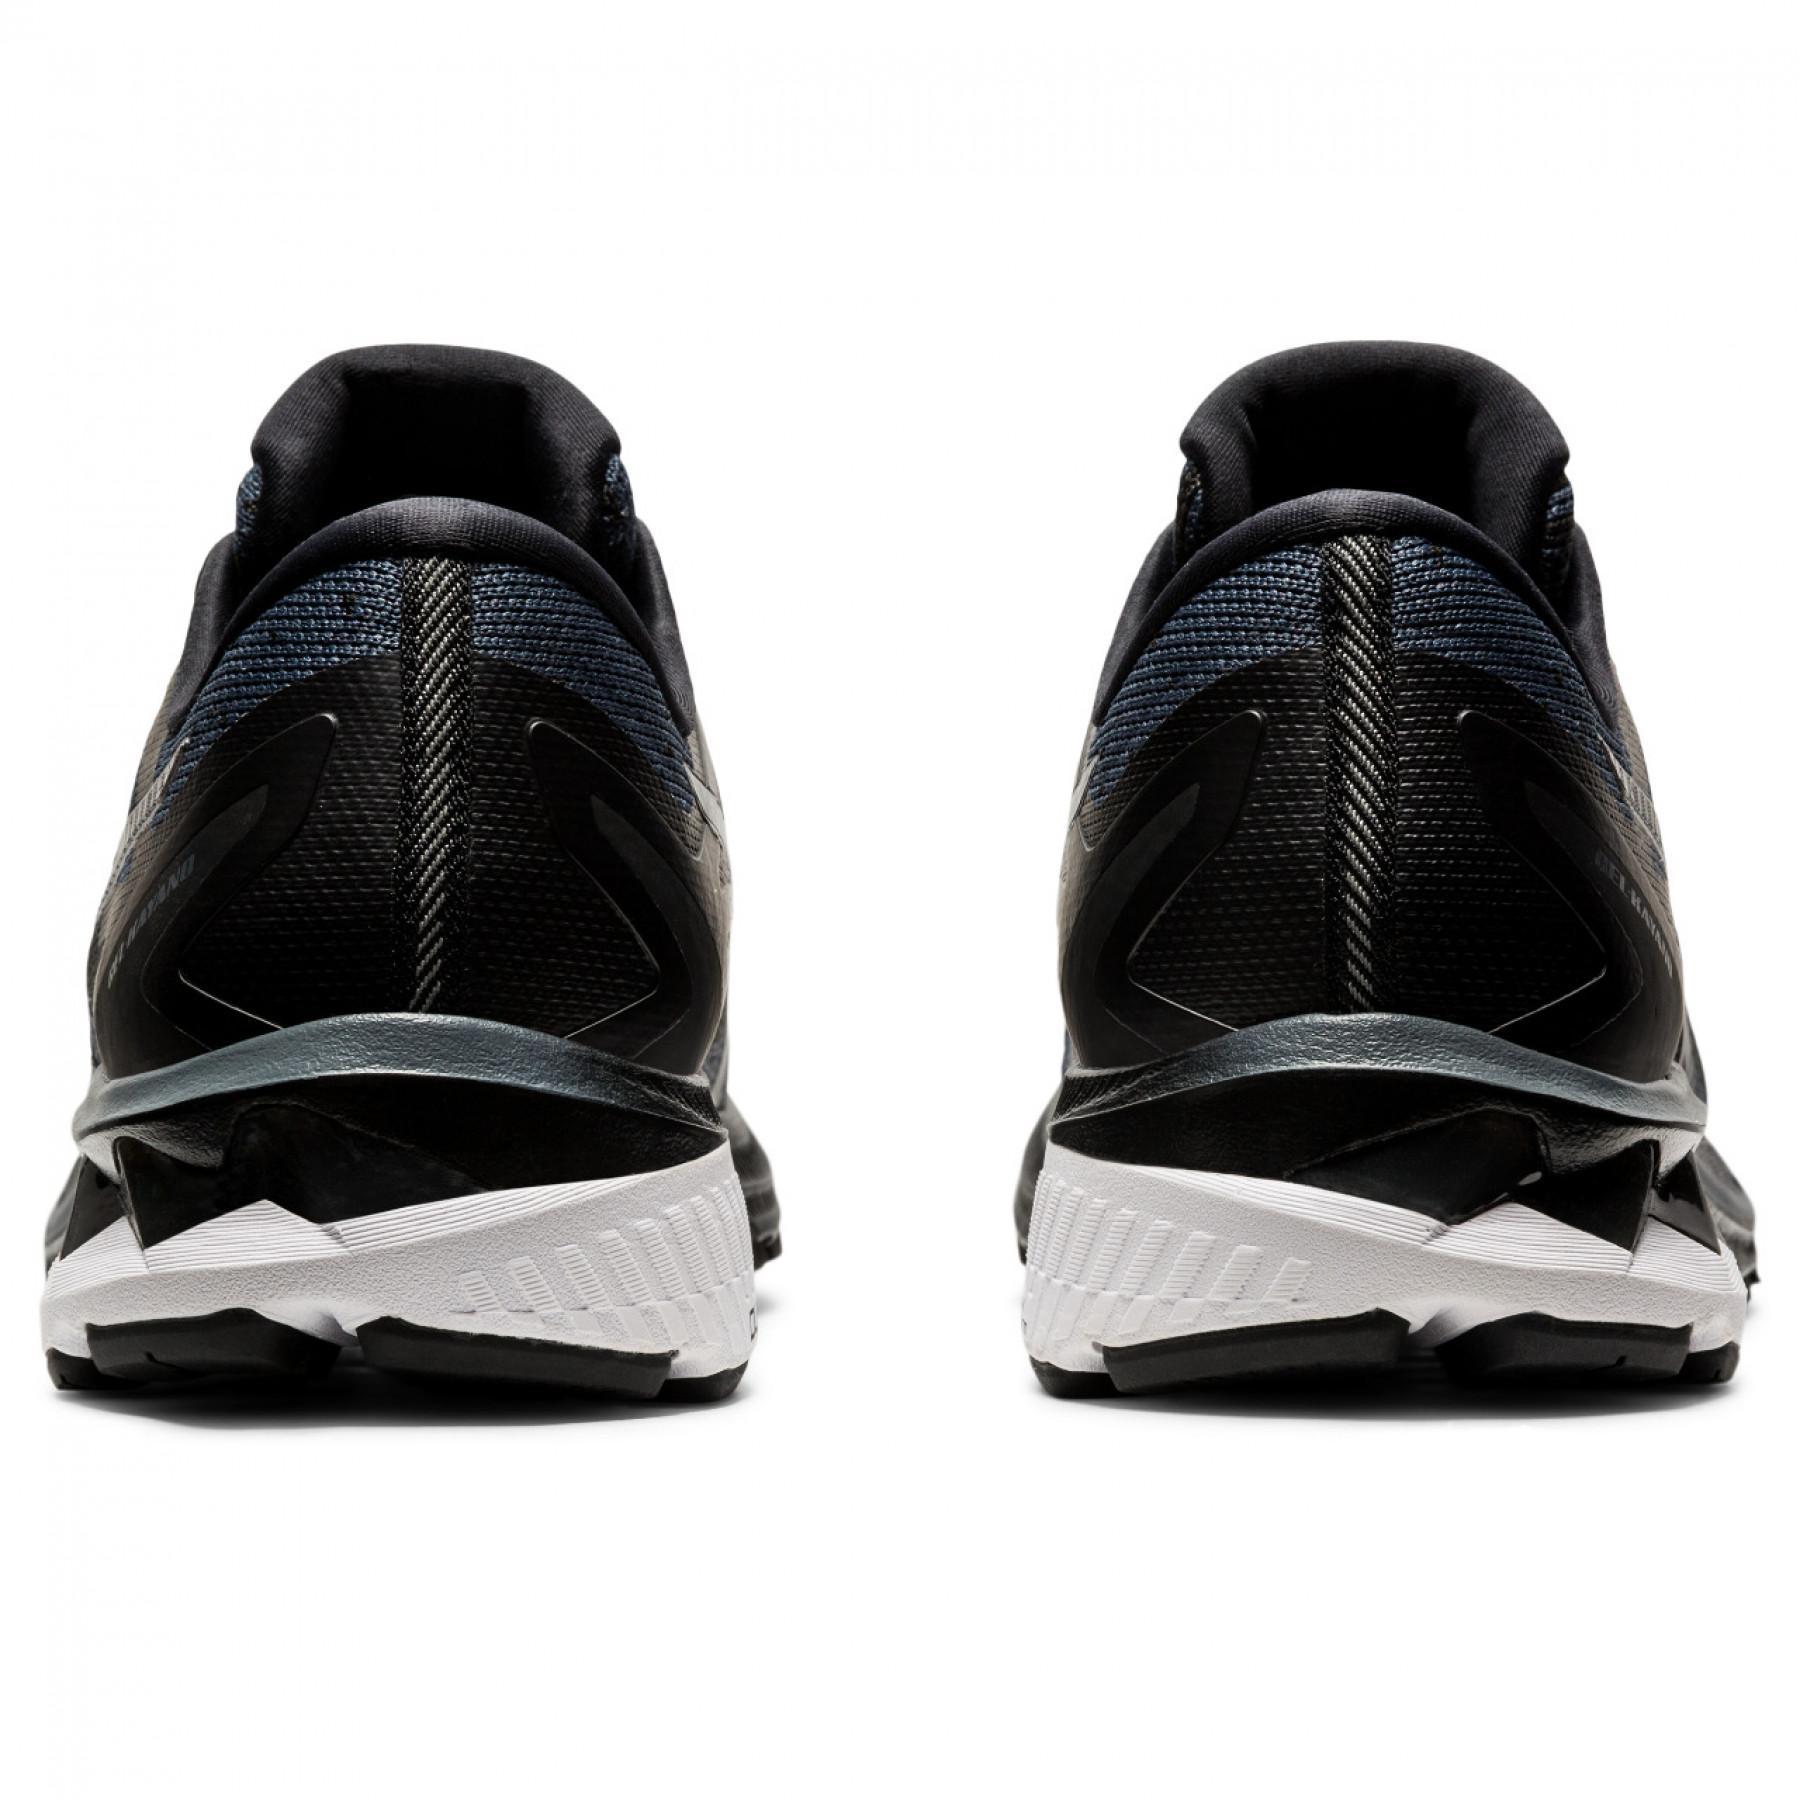 Schuhe Asics Gel-Kayano 27 Mk